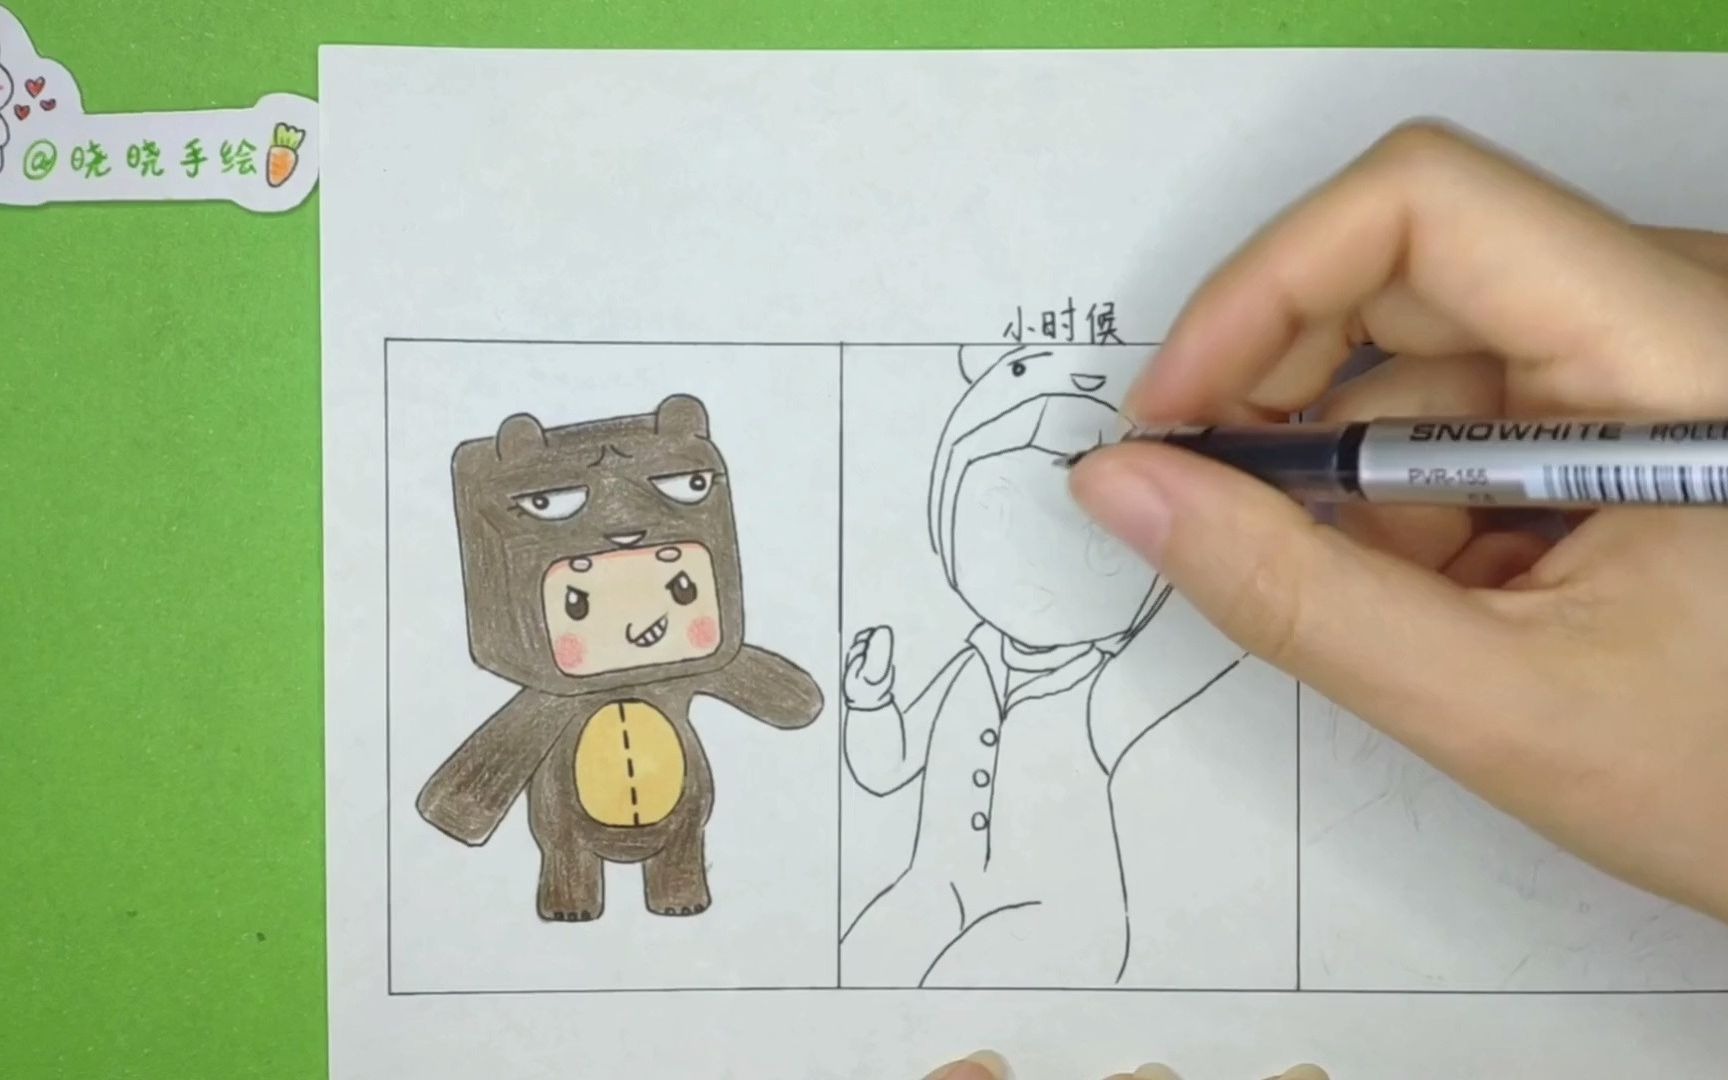 用一张纸手绘迷你世界熊孩子小时候和长大后模样画法简单又有趣